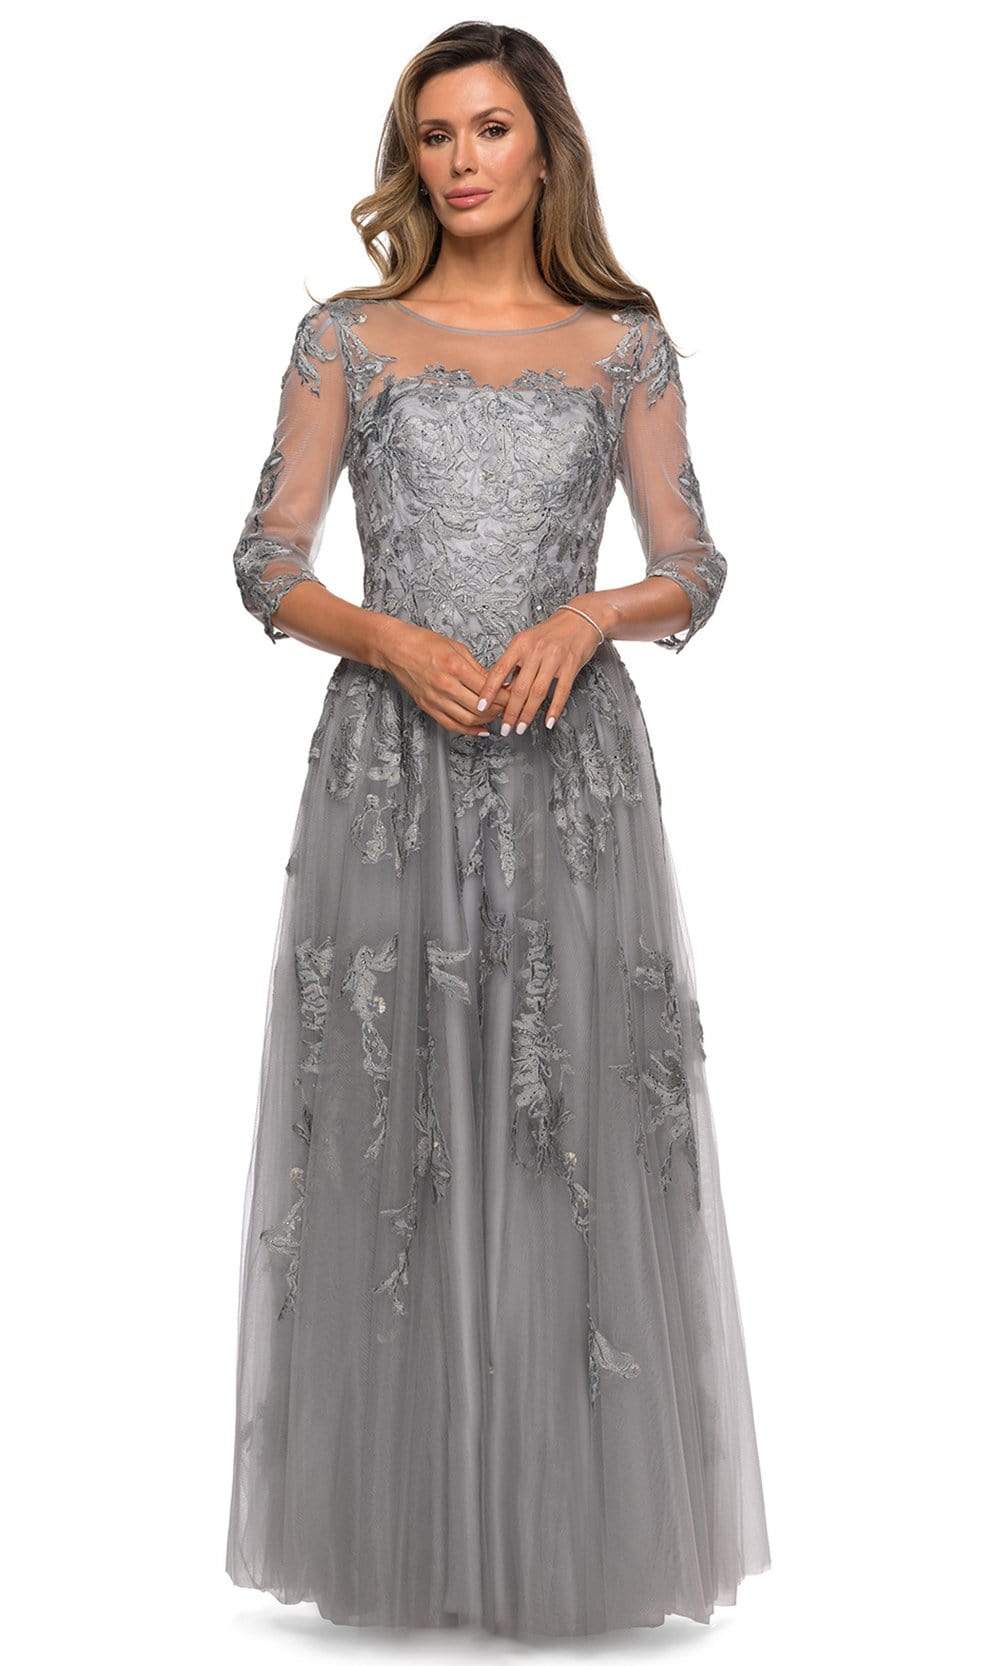 Image of La Femme - 27944 Illusion Scoop Lace Appliqued Dress